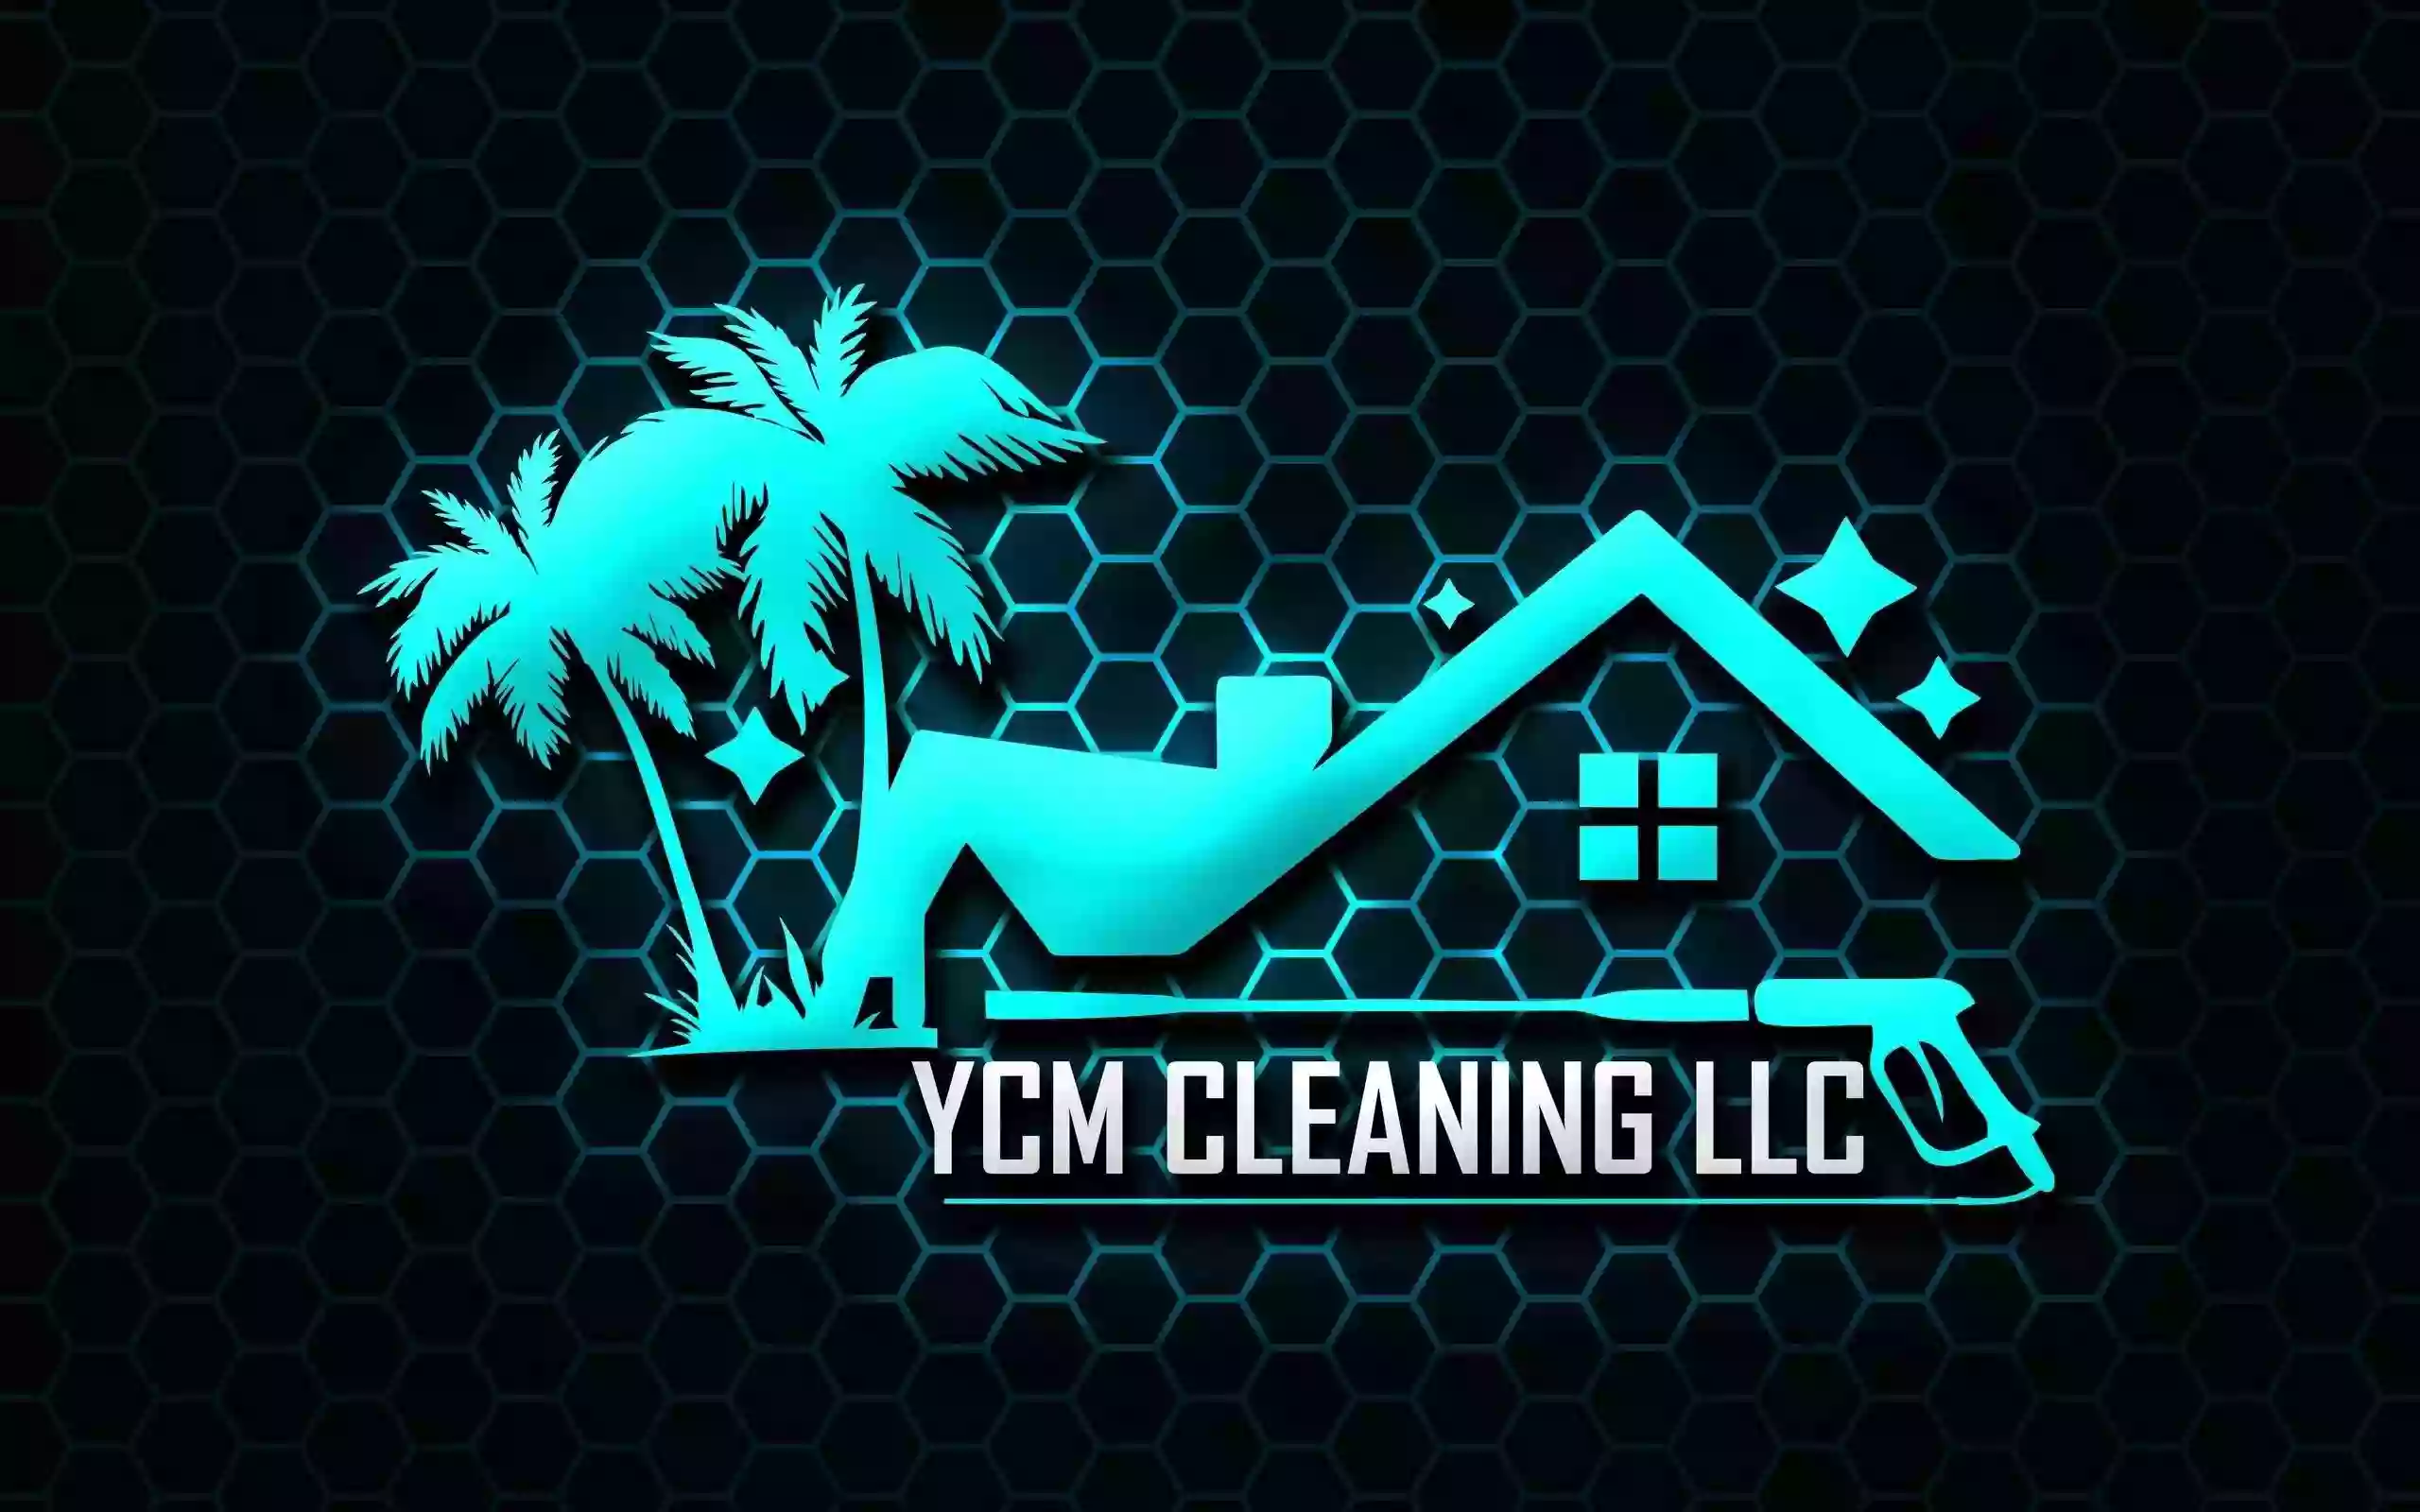 Ycm cleaning Llc